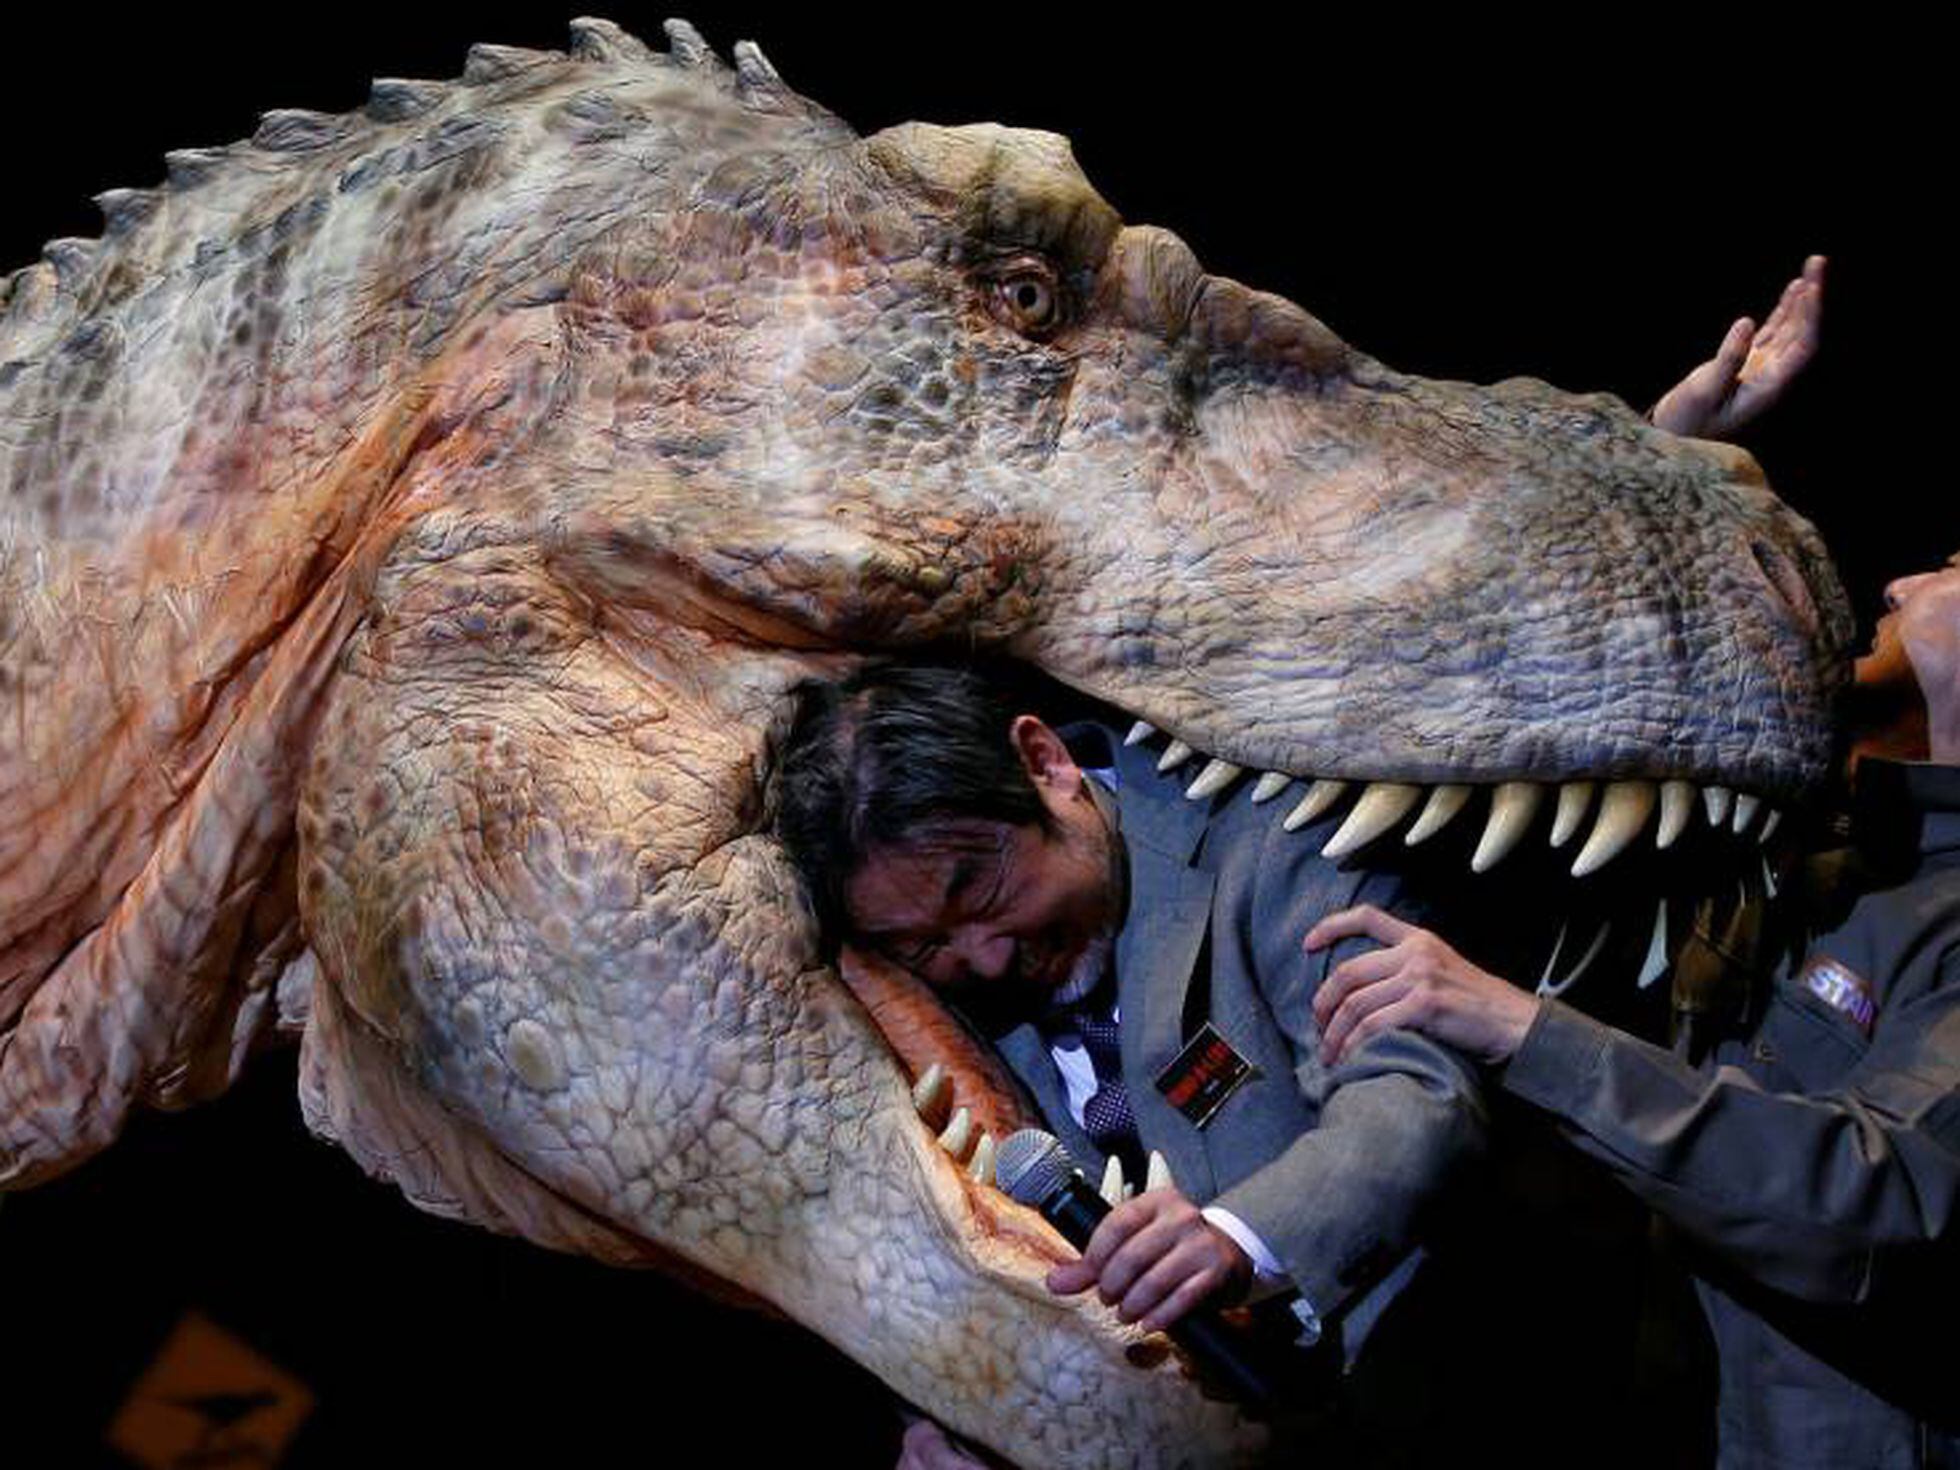 Jurassic World: Fallen Kingdom: estos son los dinosaurios de la película, FOTOS, LUCES